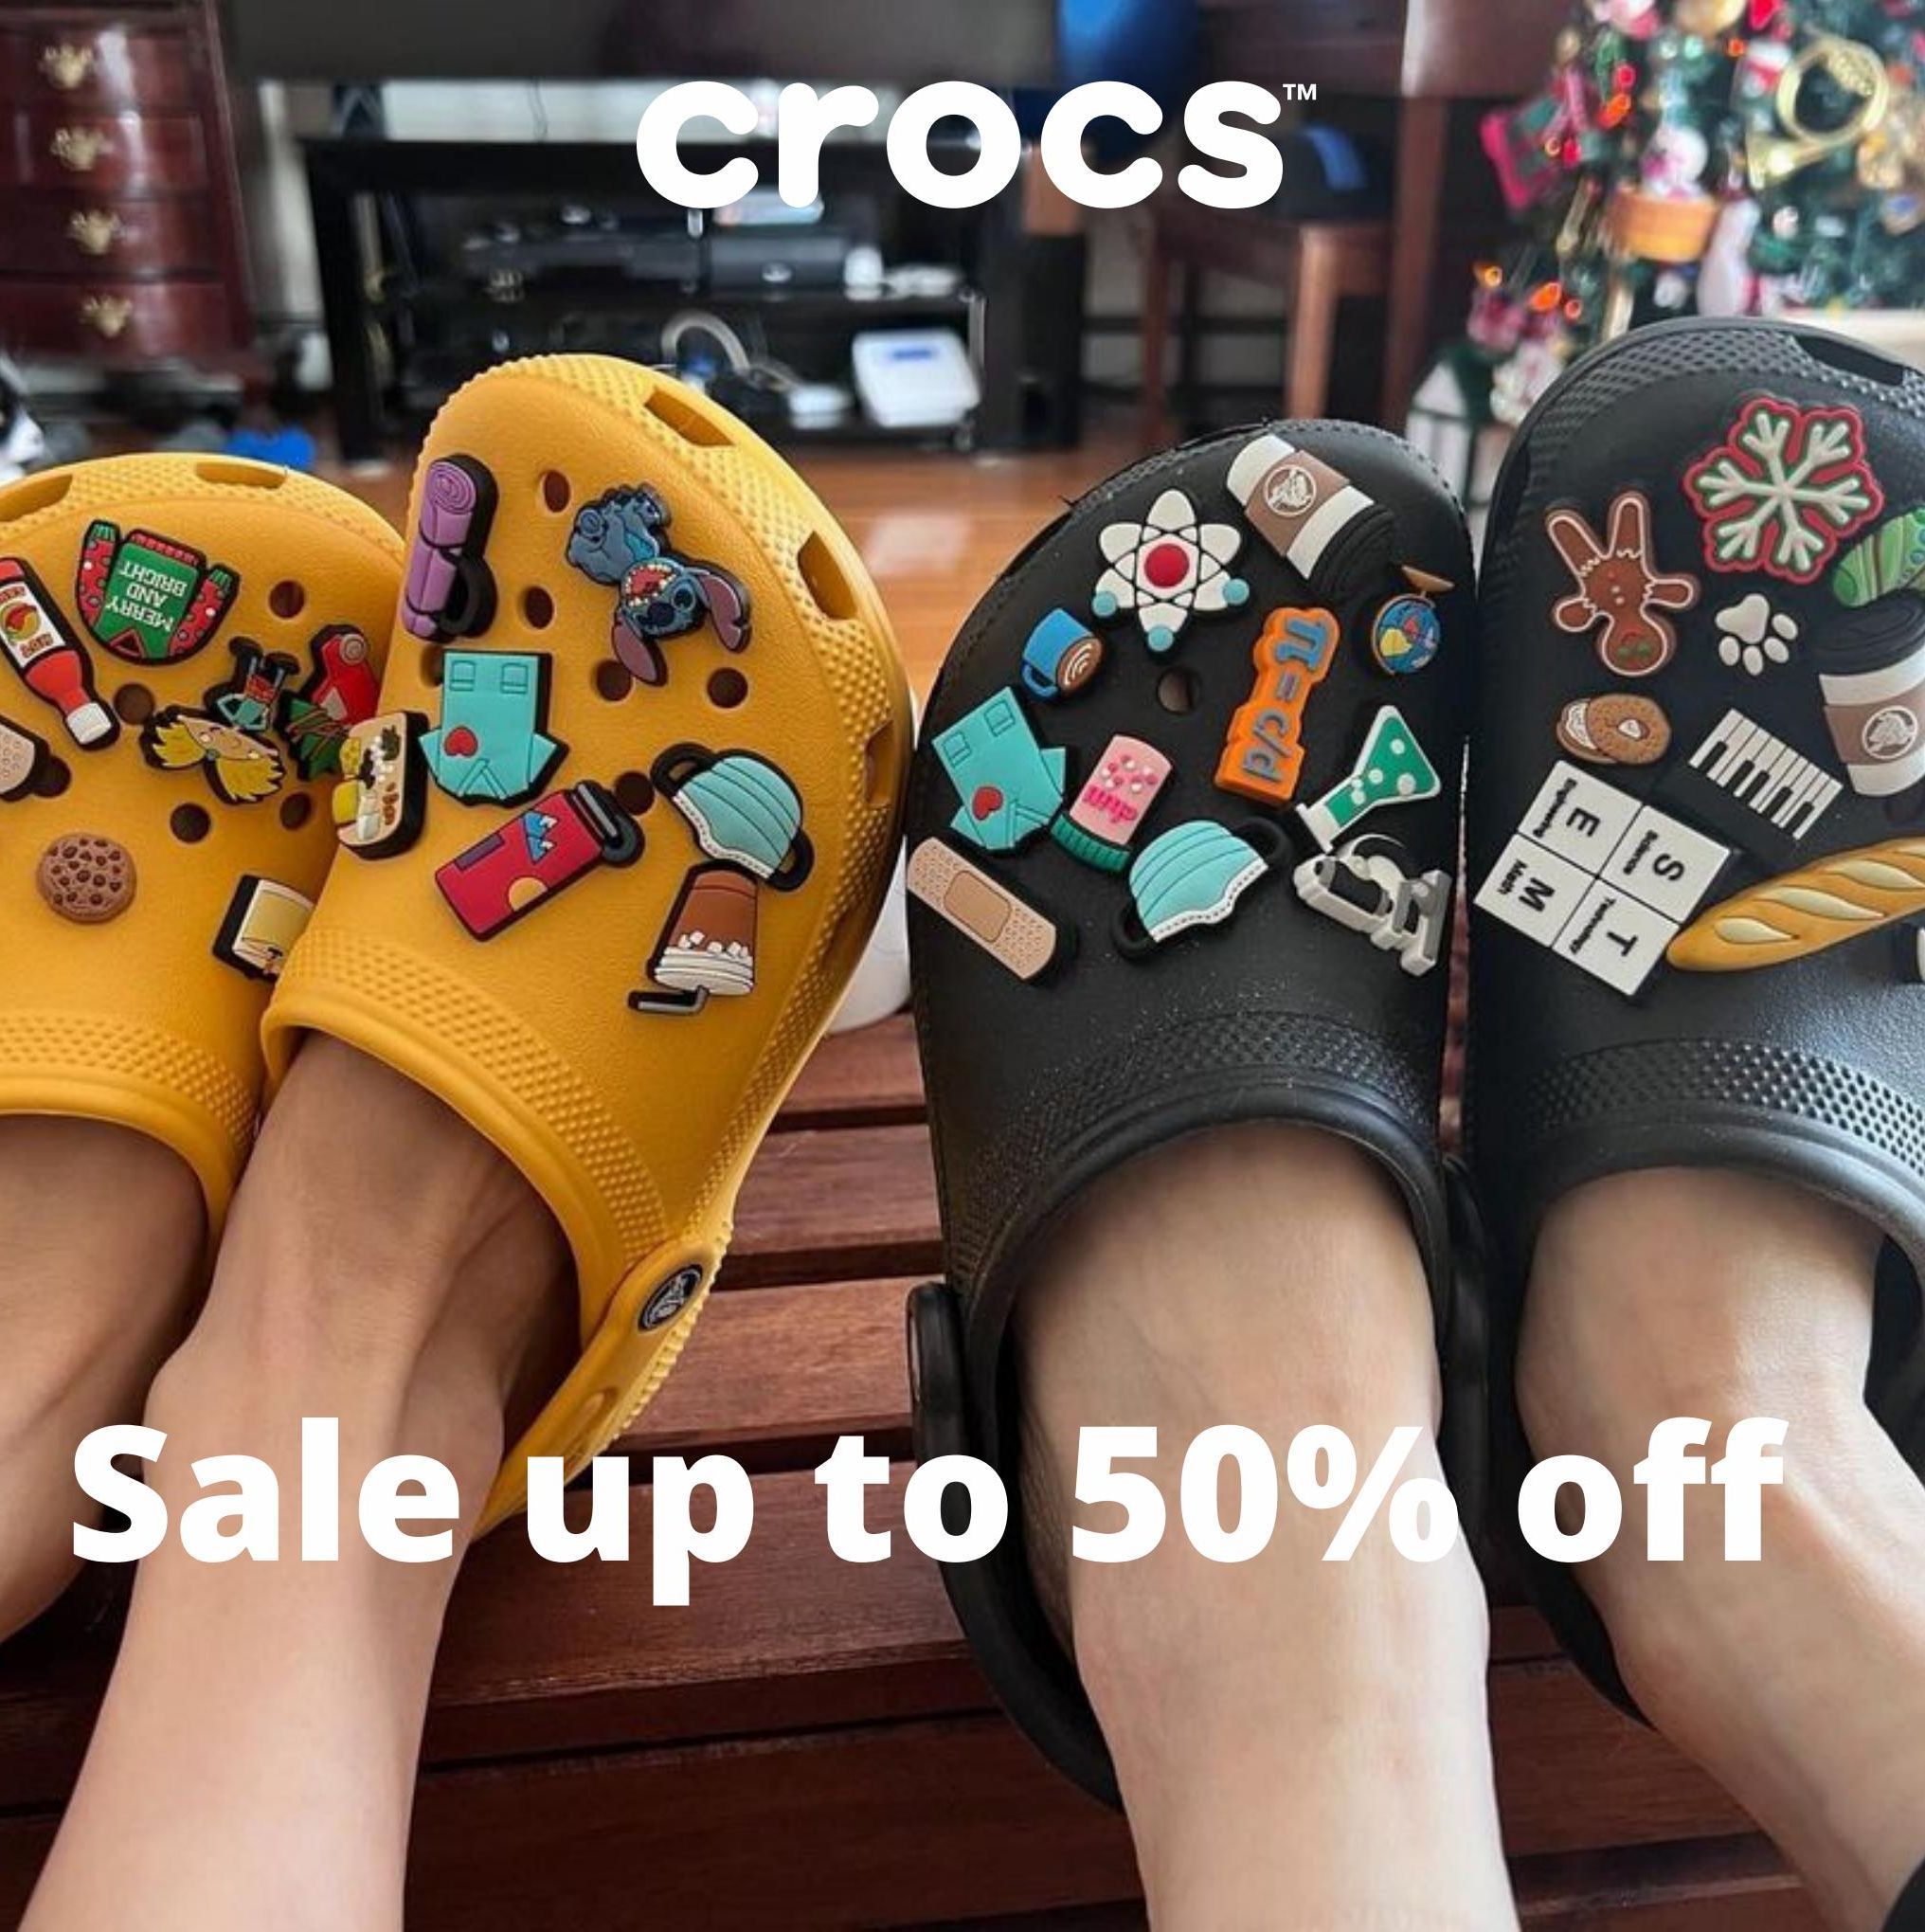 Season offers in Crocs